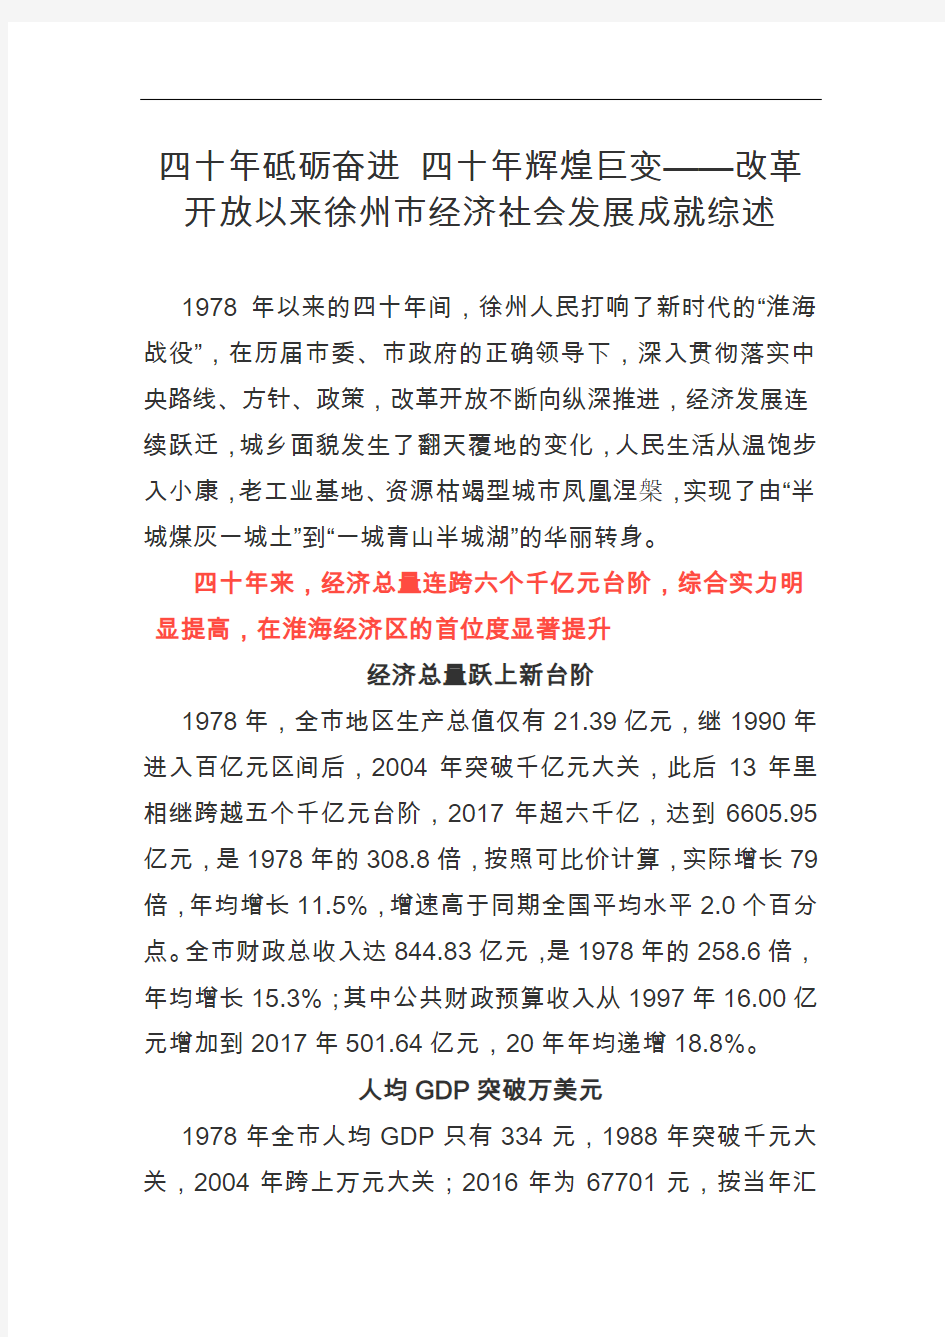 改革开放以来徐州市经济社会发展成就综述